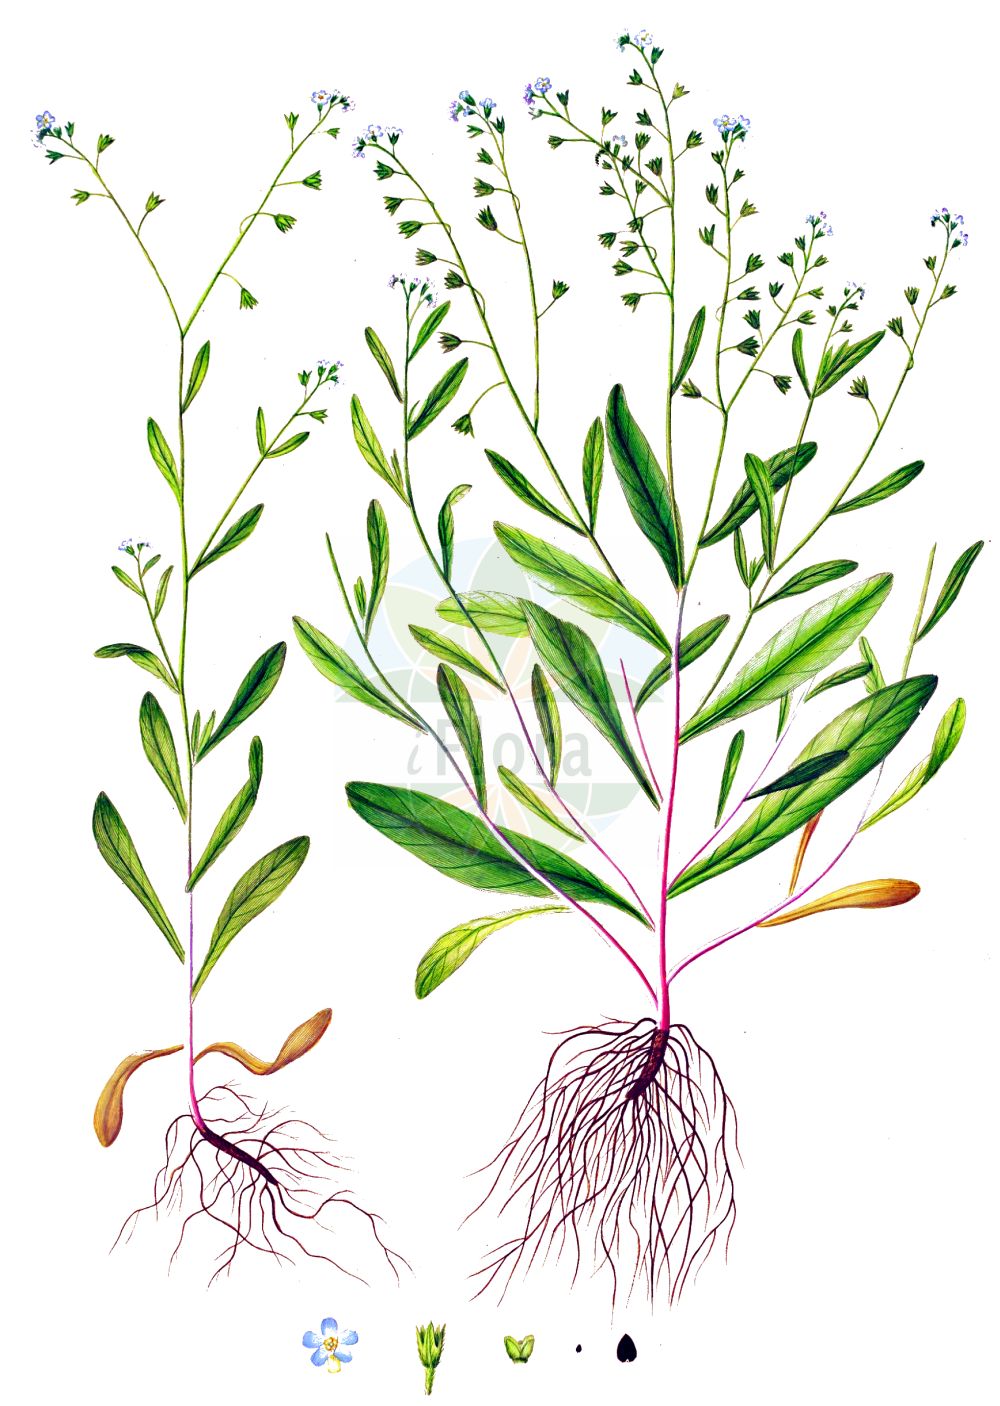 Historische Abbildung von Myosotis laxa (Rasen-Vergißmeinnicht - Tufted Forget-me-Not). Das Bild zeigt Blatt, Bluete, Frucht und Same. ---- Historical Drawing of Myosotis laxa (Rasen-Vergißmeinnicht - Tufted Forget-me-Not). The image is showing leaf, flower, fruit and seed.(Myosotis laxa,Rasen-Vergißmeinnicht,Tufted Forget-me-Not,Myosotis laxa,Myosotis scorpioides subsp. laxa,Rasen-Vergissmeinnicht,Tufted Forget-me-Not,Bay Forget-me-Not,Myosotis,Vergißmeinnicht,Forget-me-Not,Boraginaceae,Raublattgewächse,Forget-me-Not family,Blatt,Bluete,Frucht,Same,leaf,flower,fruit,seed,Oeder (1761-1883))